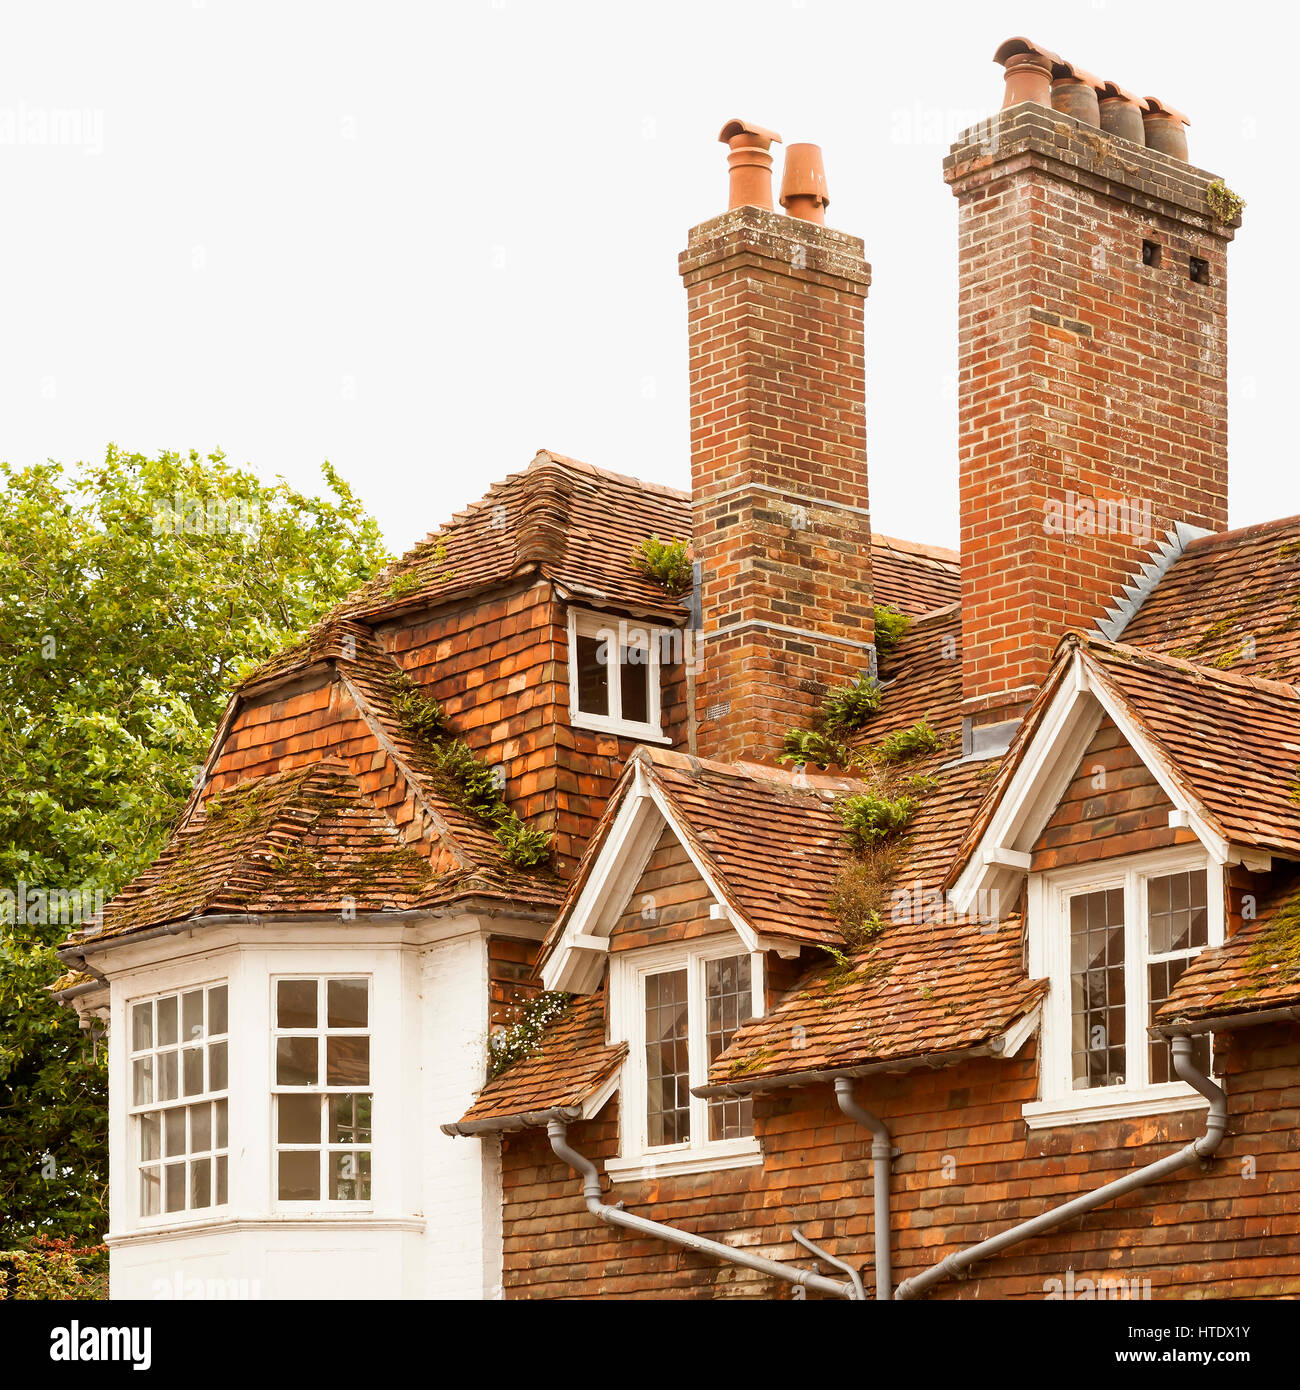 Grand old ligne de pavillon. Un grand old compliqué la ligne de toit avec fenêtres masquées et solide faite de vieilles cheminées en briques rouges de la région des Midlands d'Angleterre. Banque D'Images